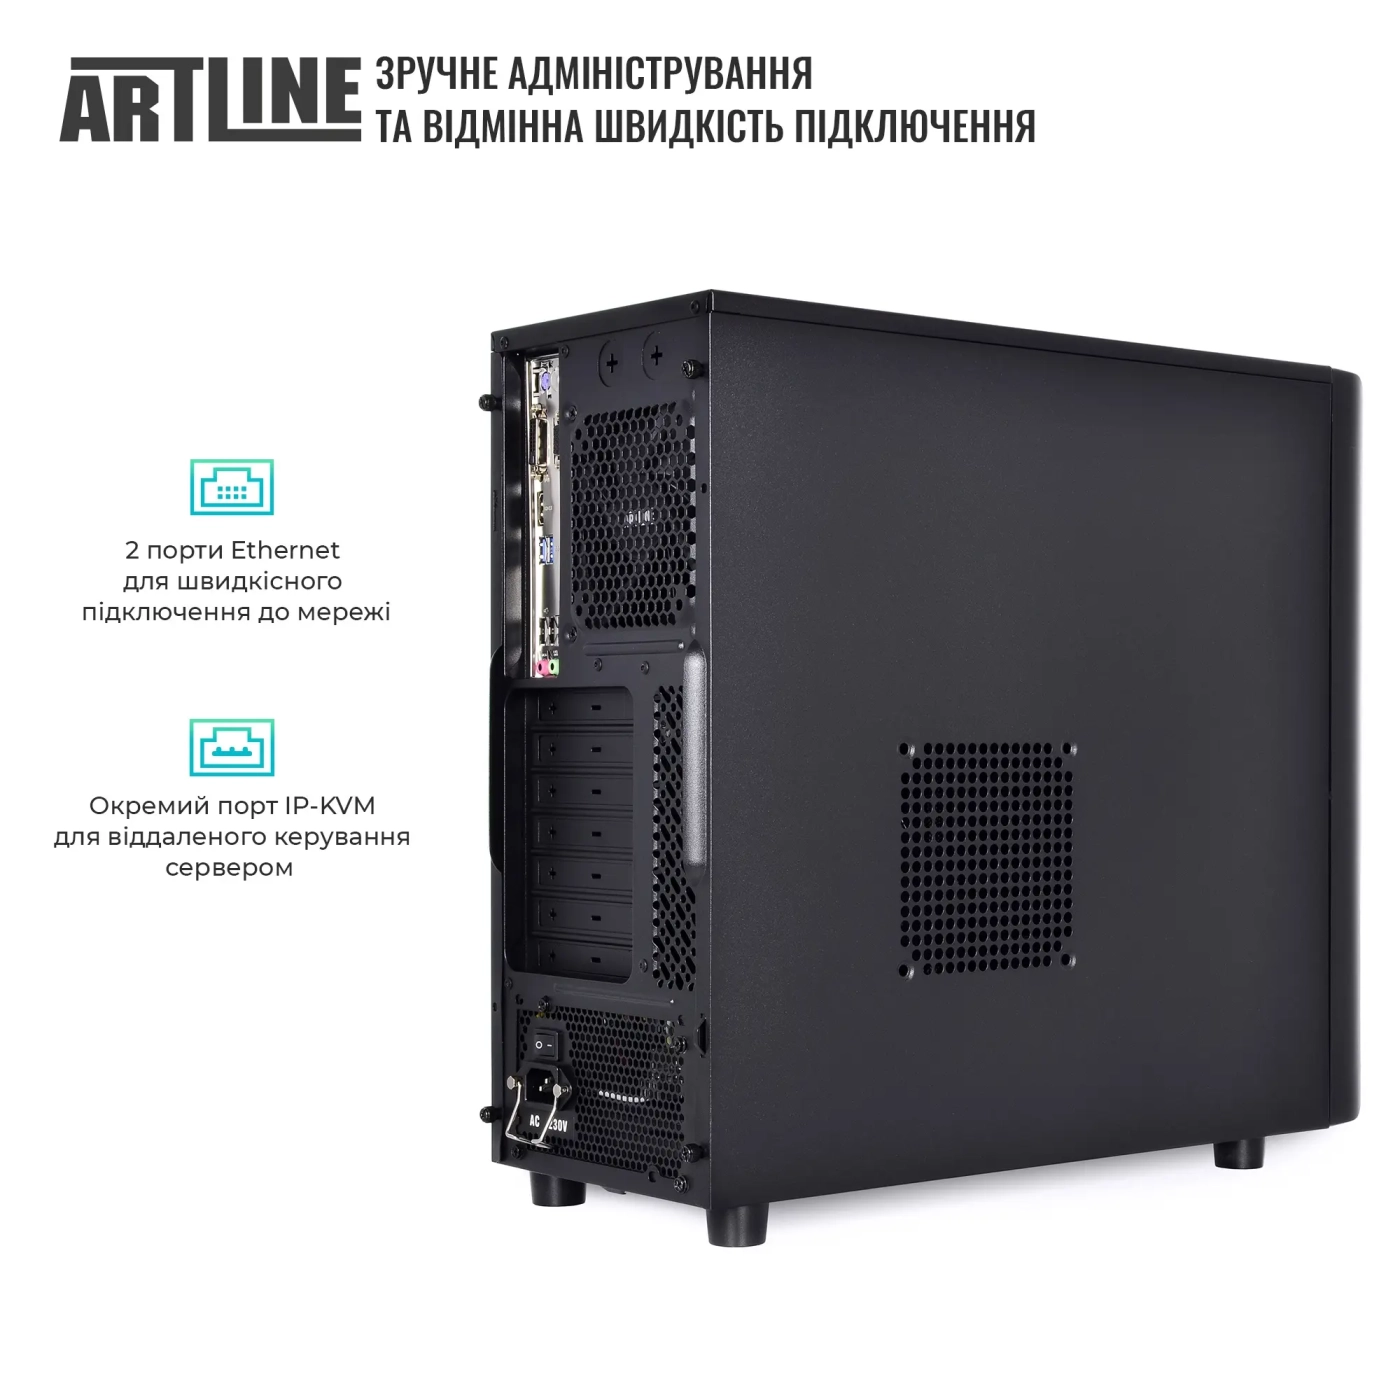 Купить Сервер ARTLINE Business T36 (T36v29) - фото 4